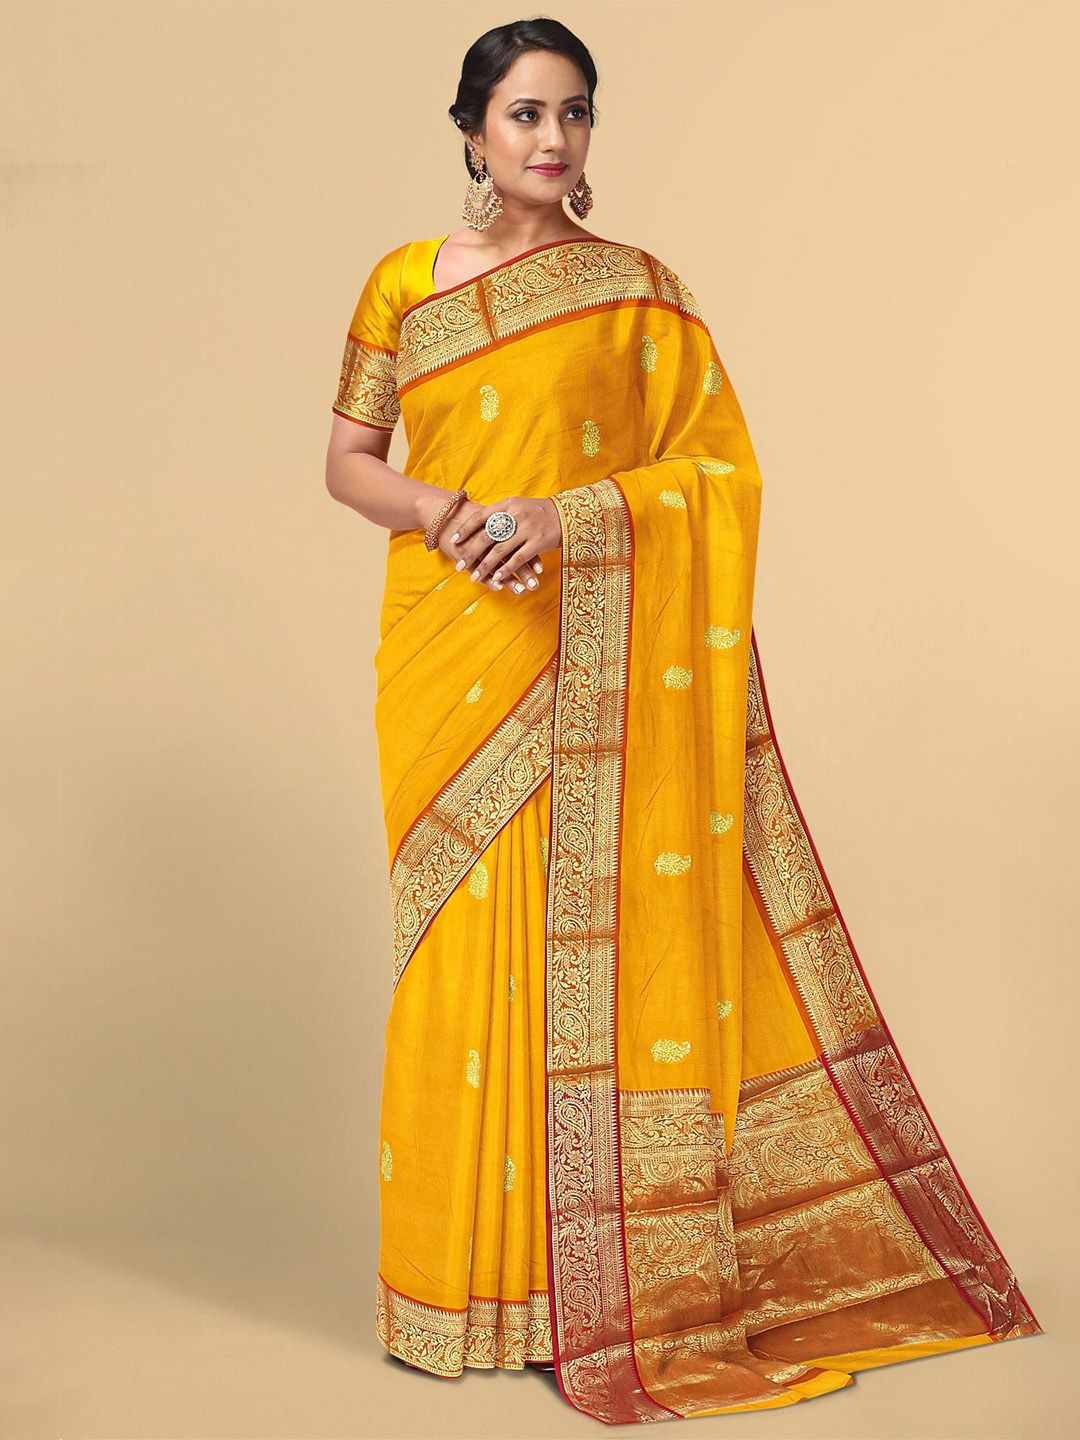 Kalamandir Women Yellow & Gold Paisley Print Zari Pashmina Saree Price in India